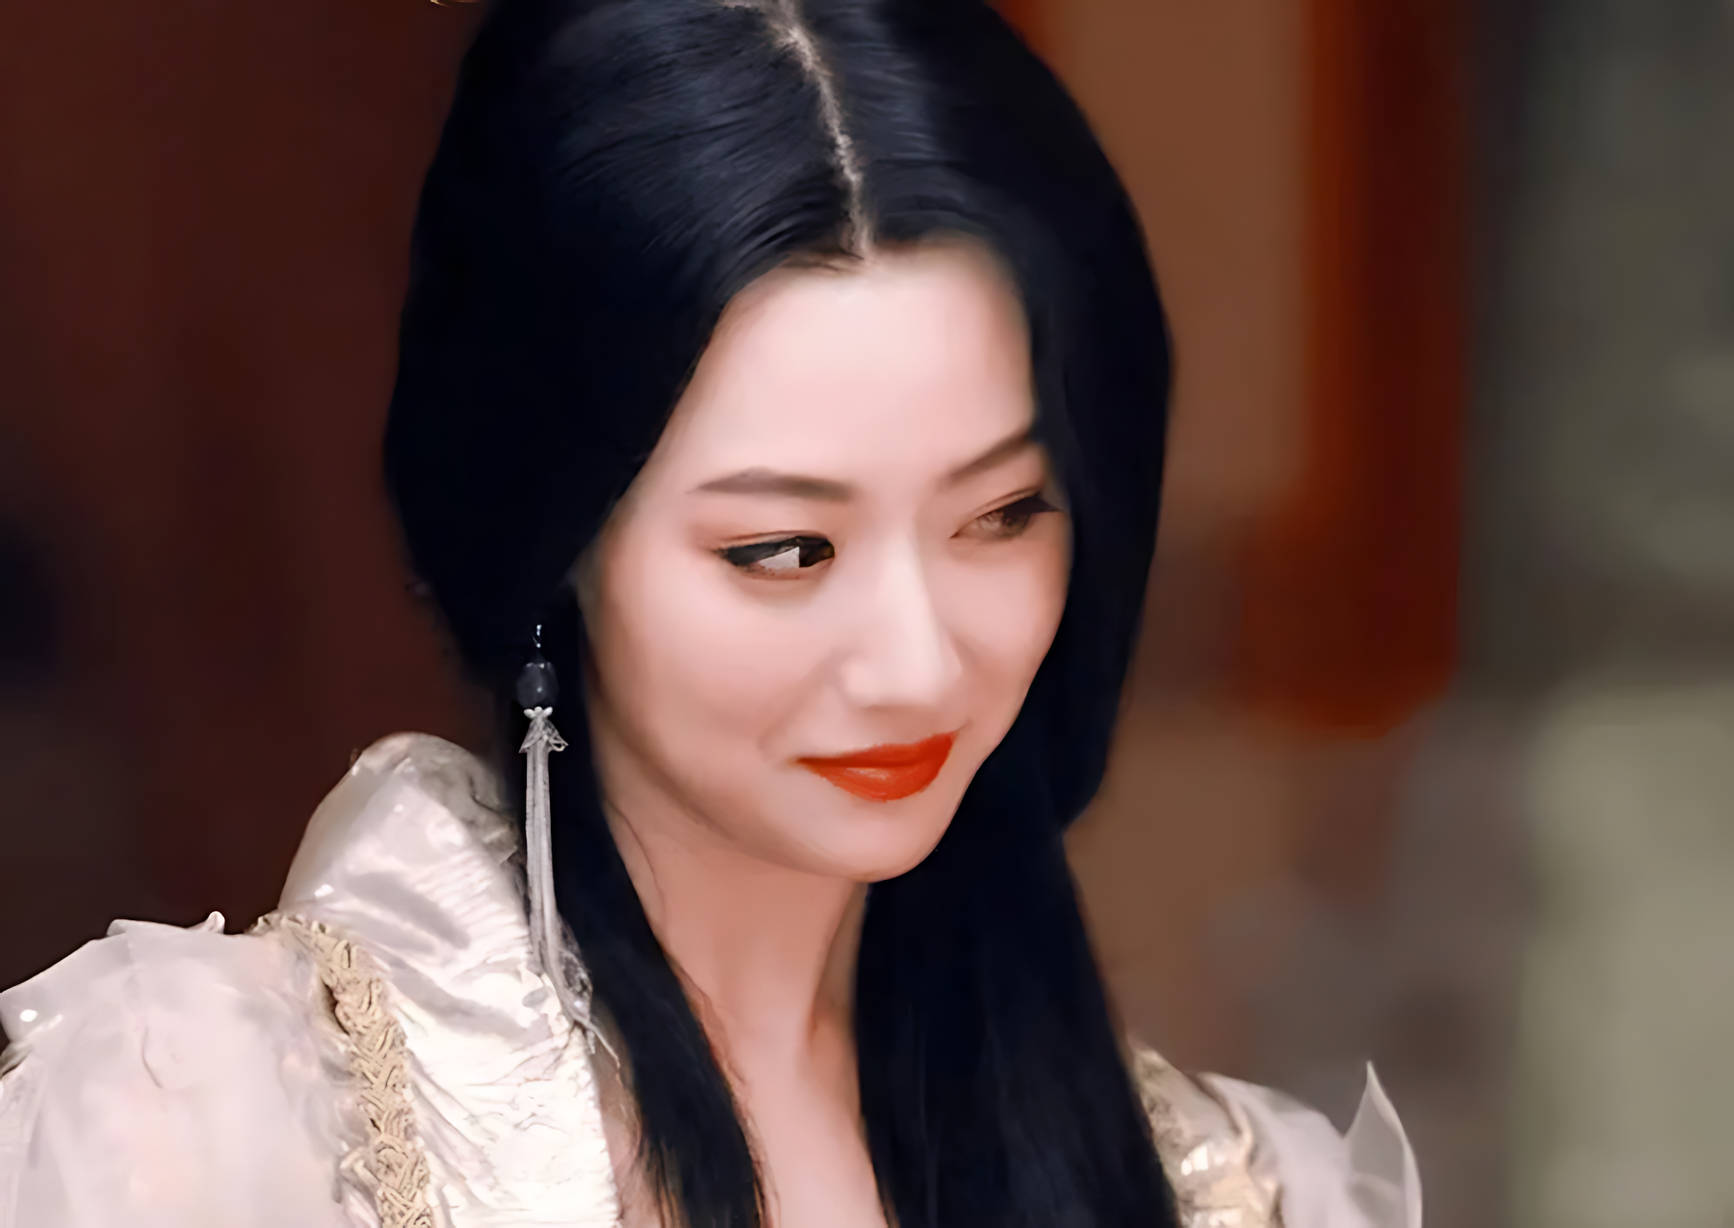 在《神话》中,白冰饰演的玉漱公主飘逸柔美,给观众留下了深刻的印象